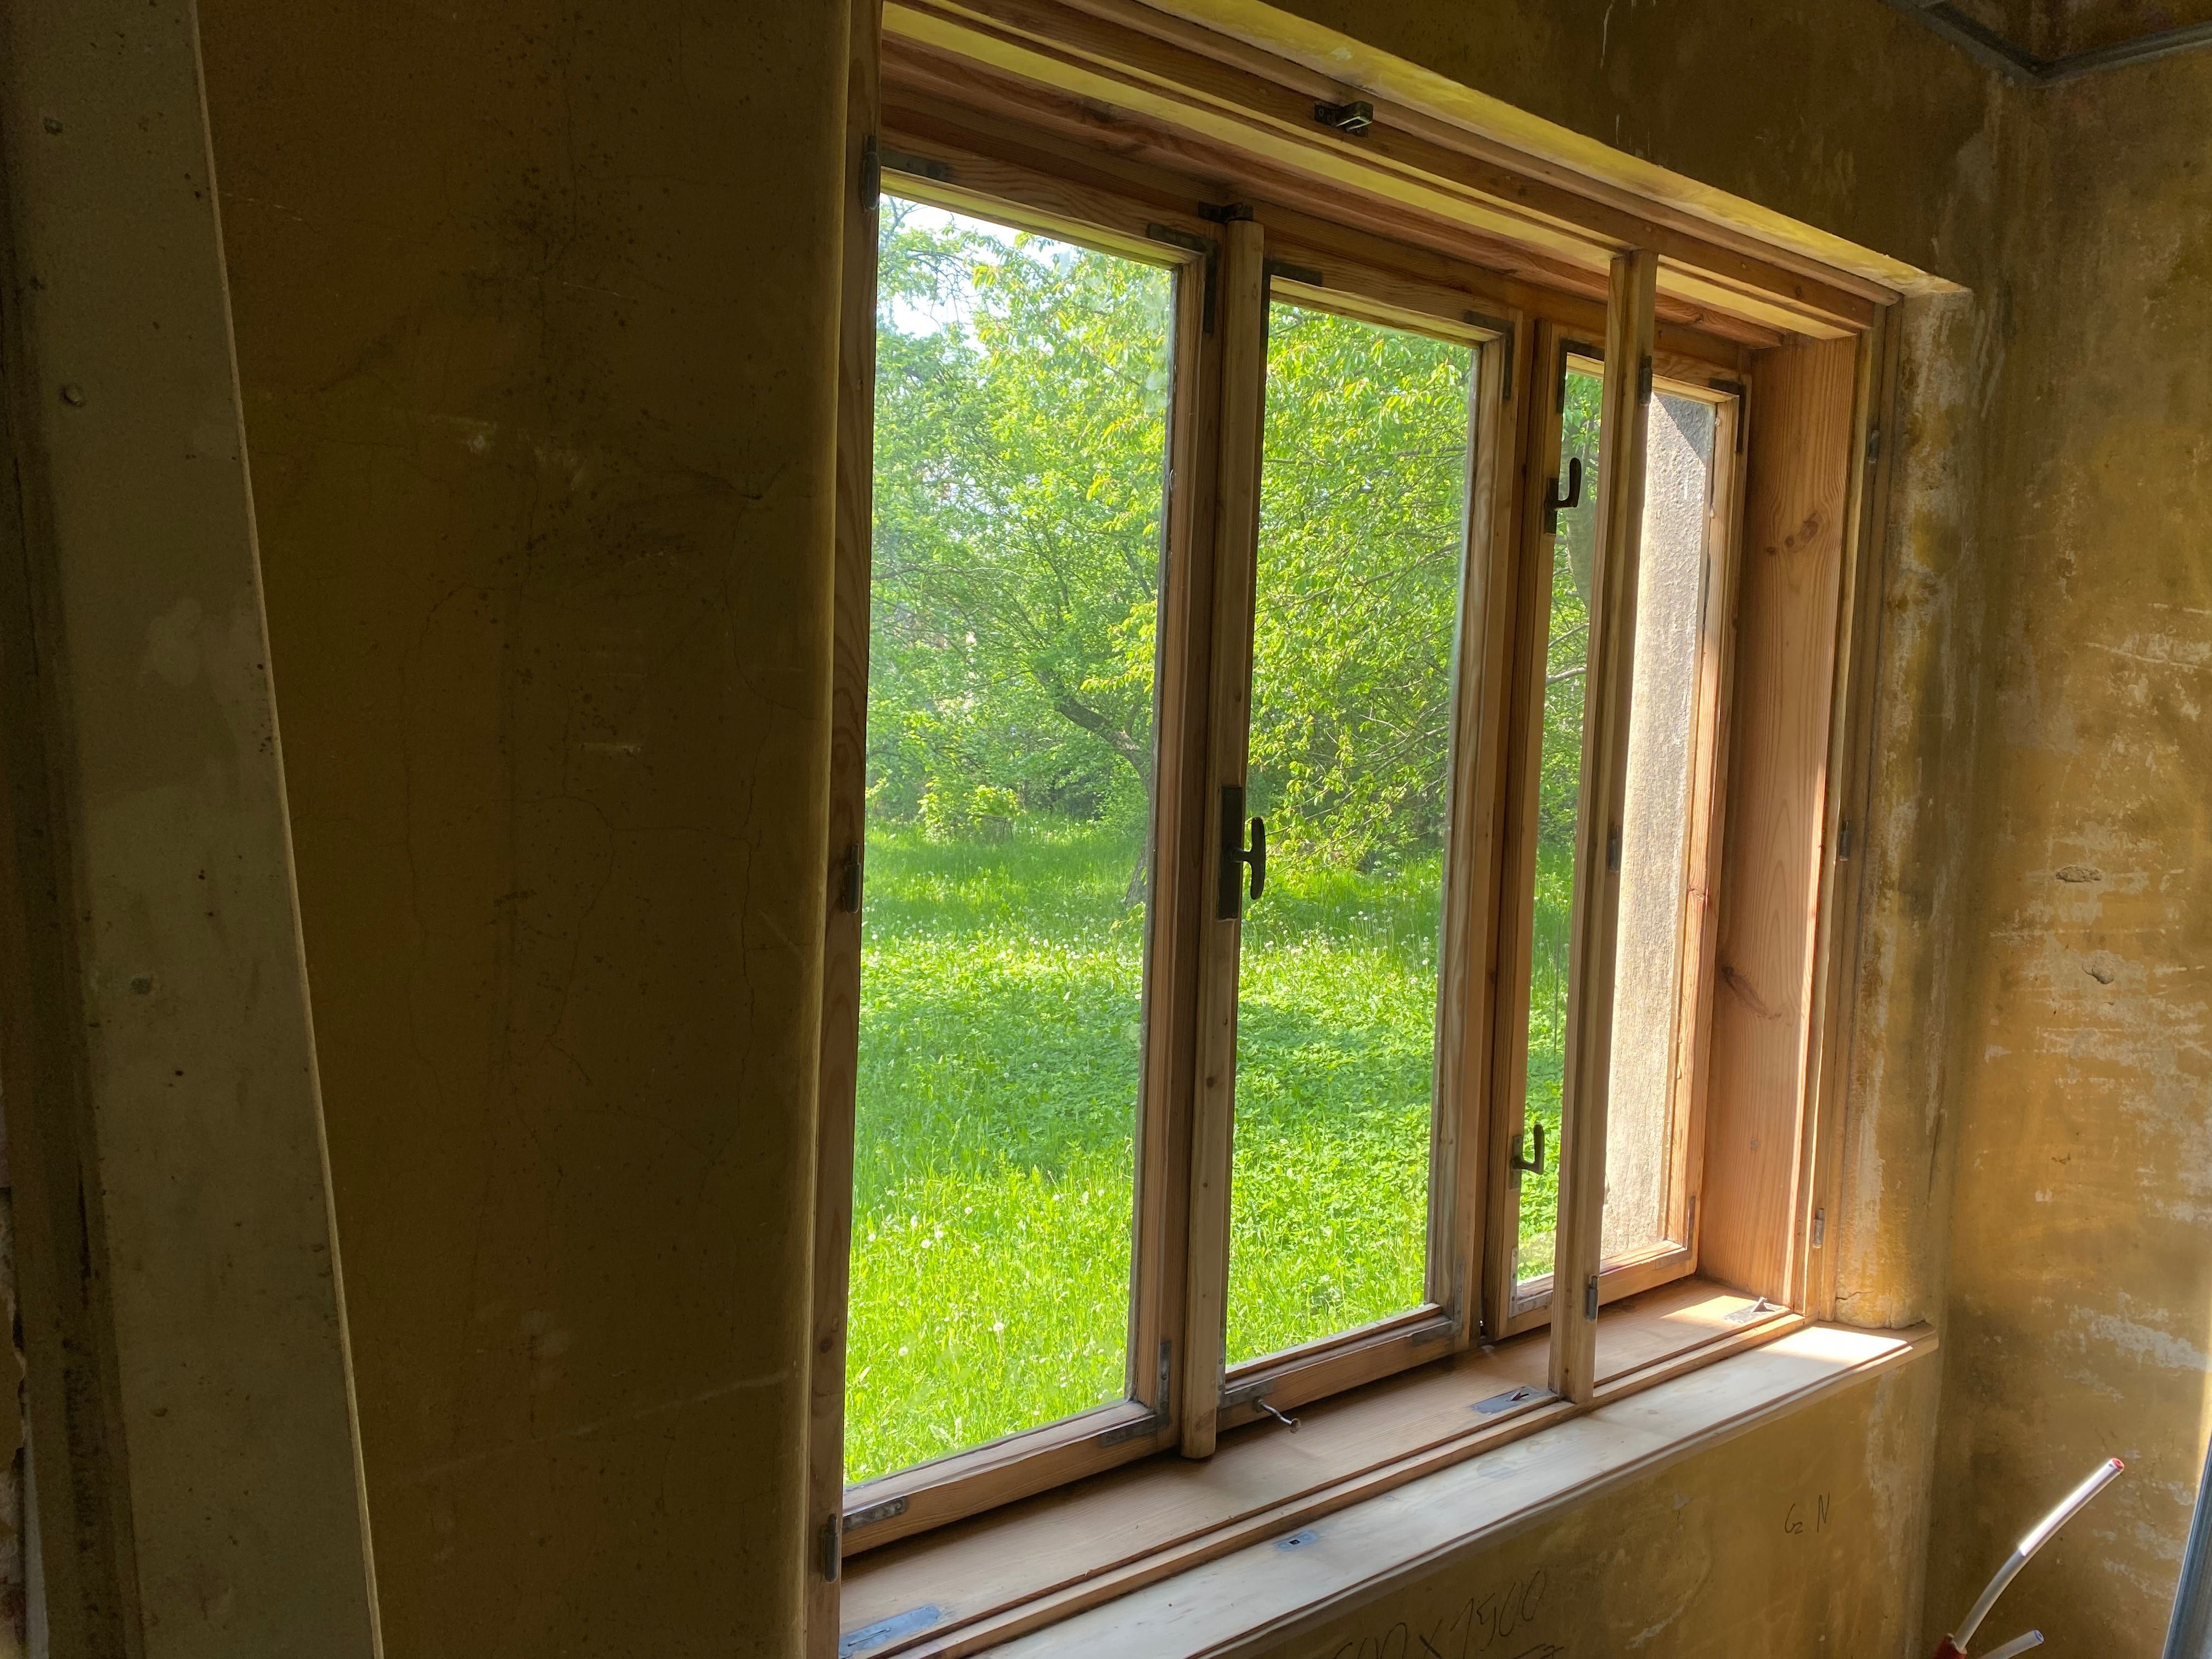 Renowacja okien ,drzwi ,mebli,starych domów.Adaptacja poddaszy